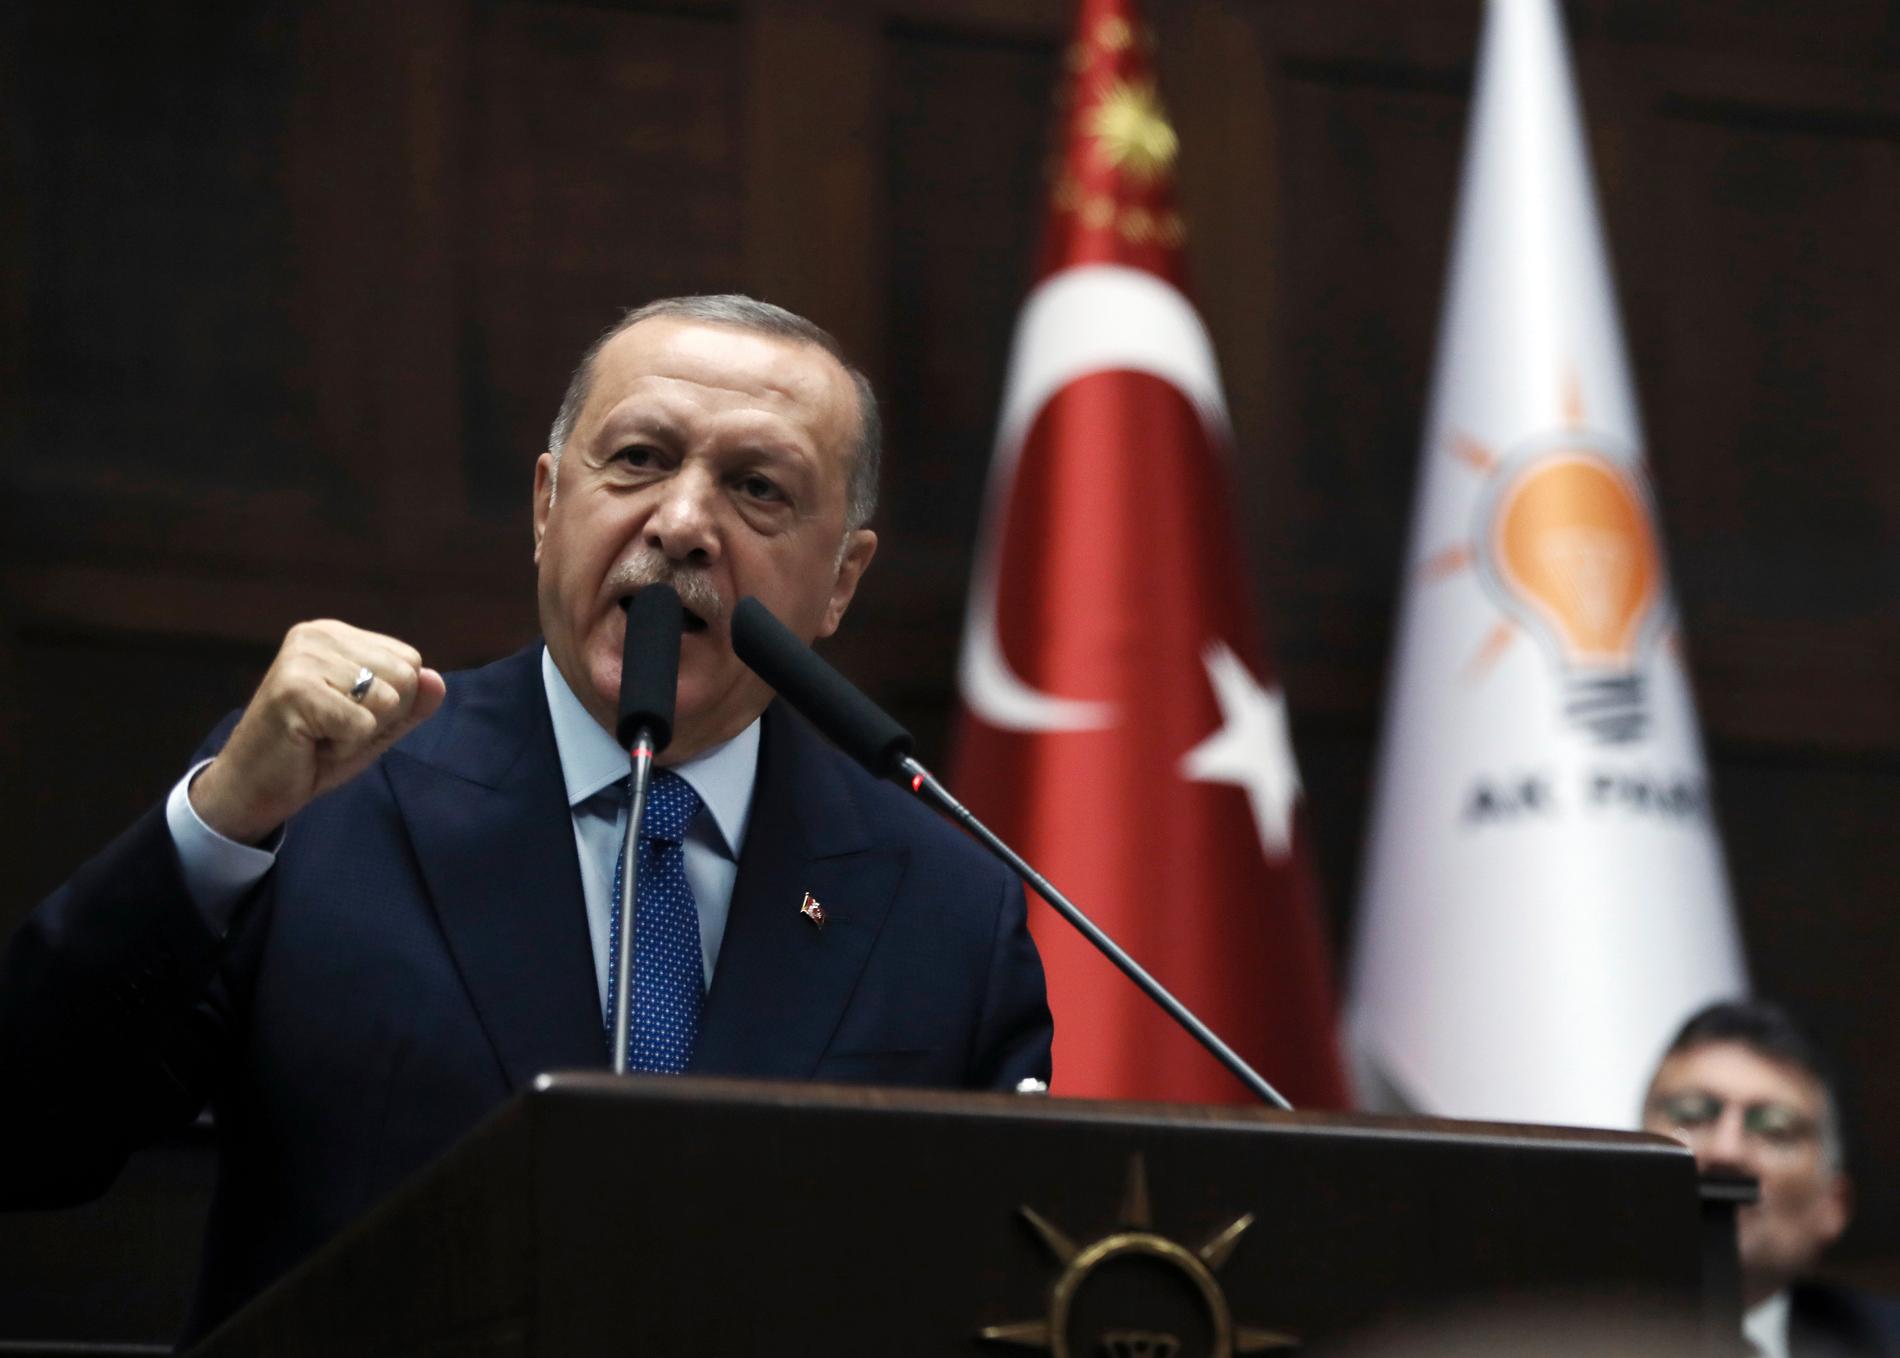 Turkiets president Recep Tayyip Erdogan talade i parlamentet på onsdagen.